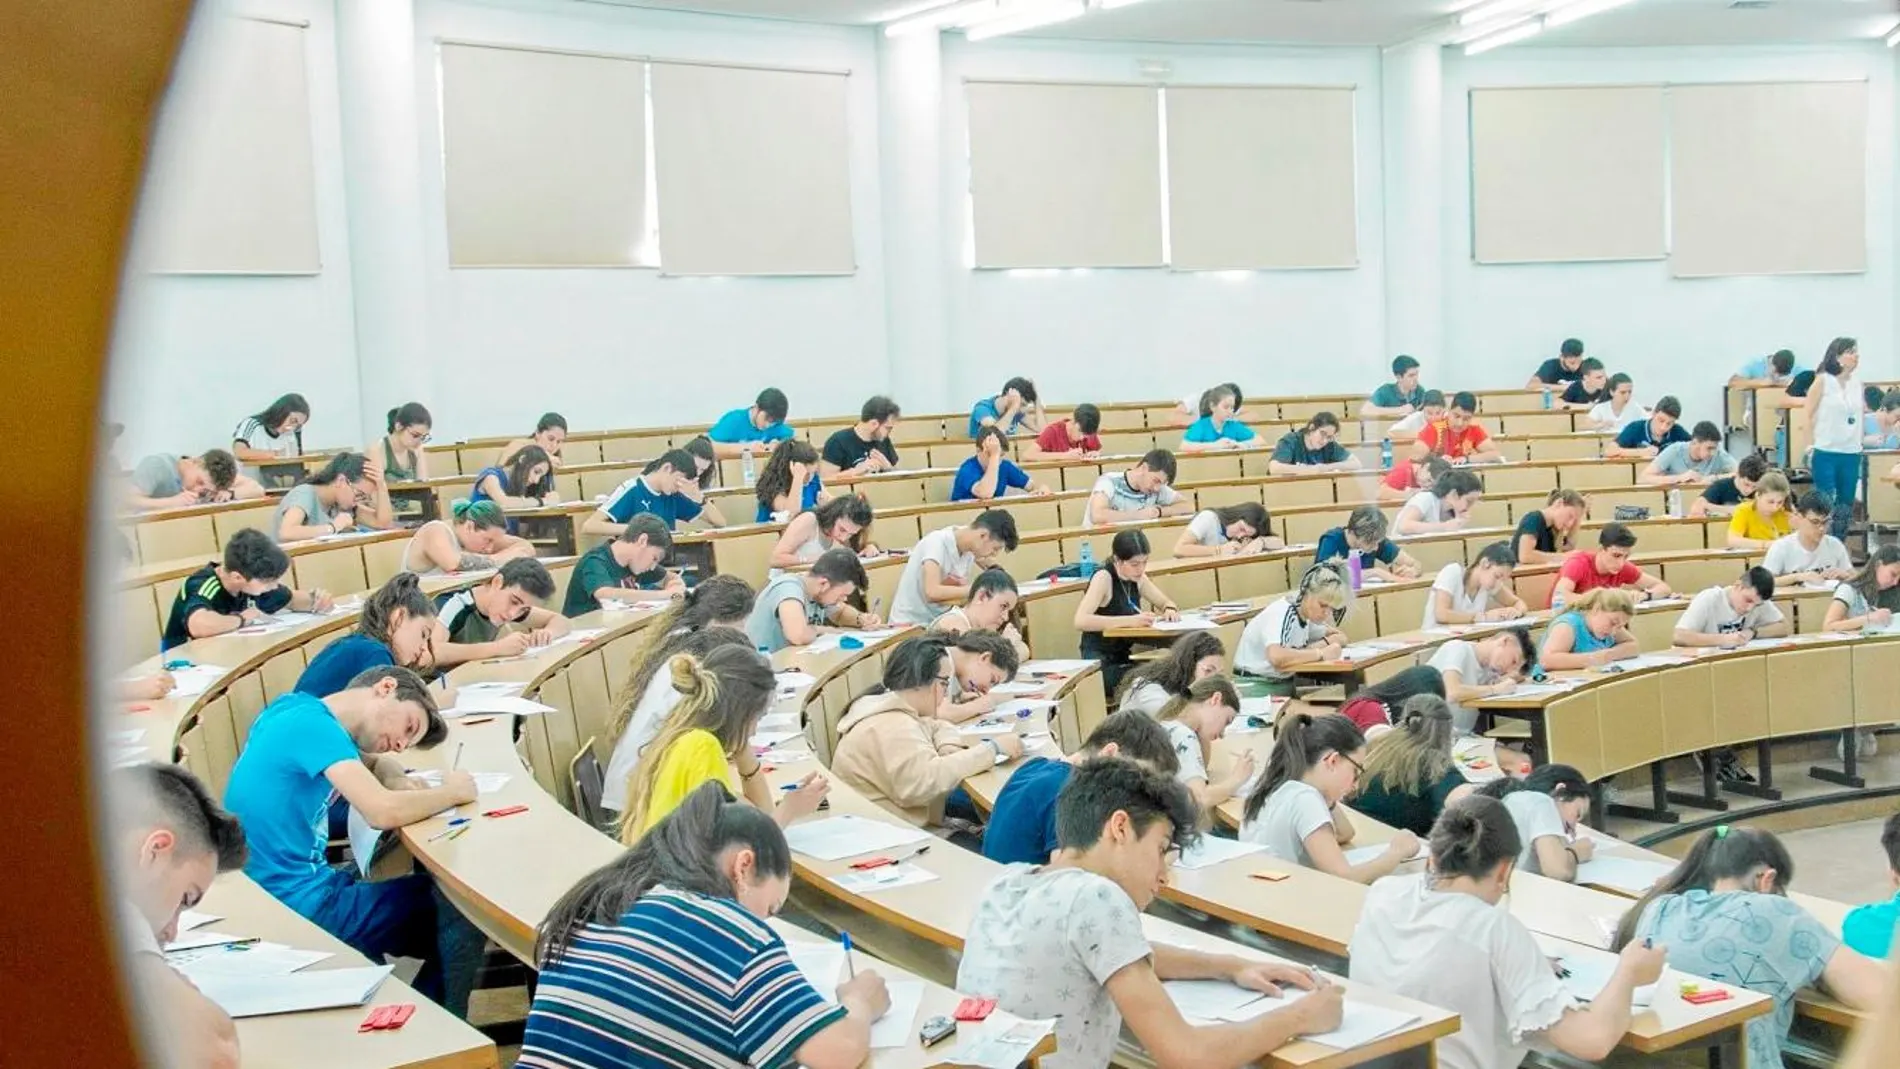 Jóvenes universitarios durante un examen